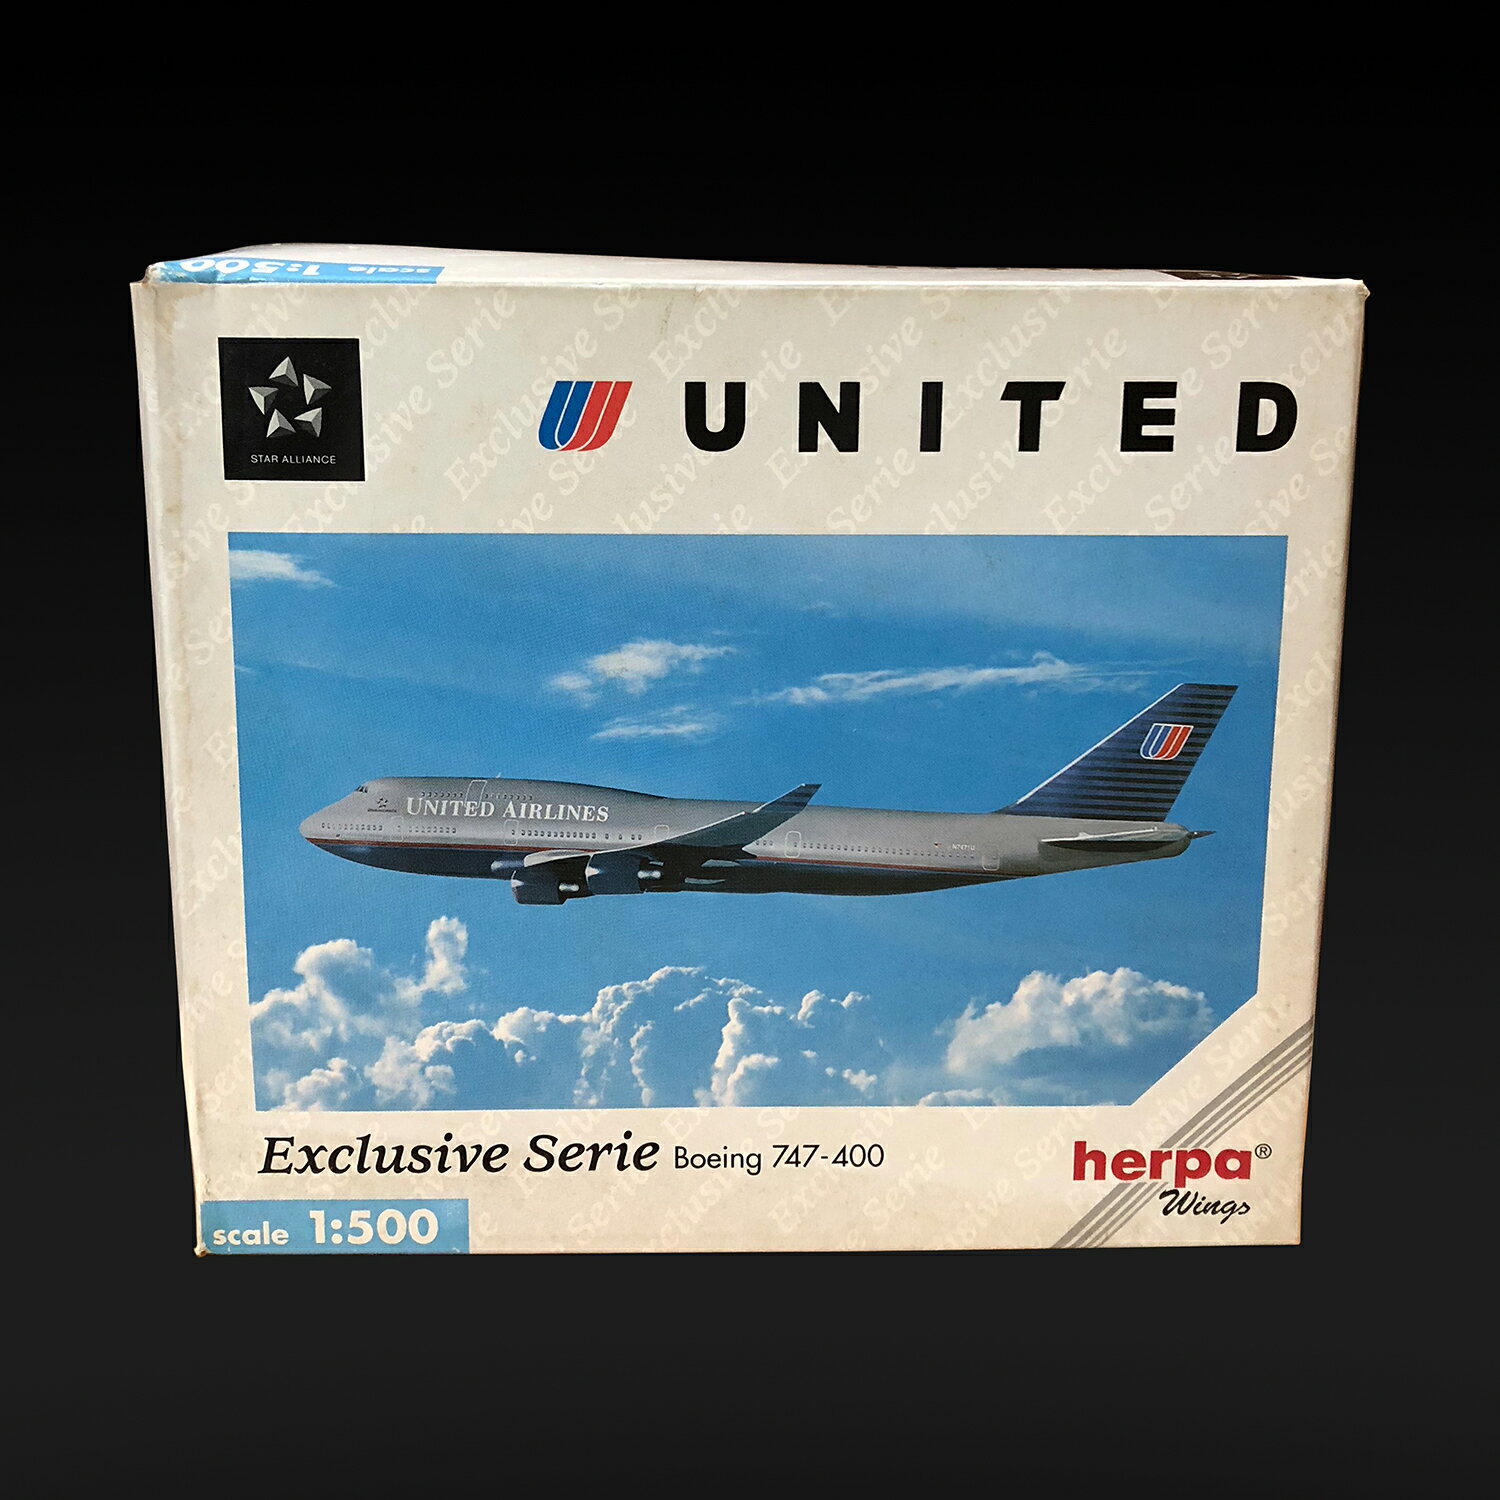 Herpa Wings 1:500 UNITED Boeing 747-400 飛機模型【Tonbook蜻蜓書店】